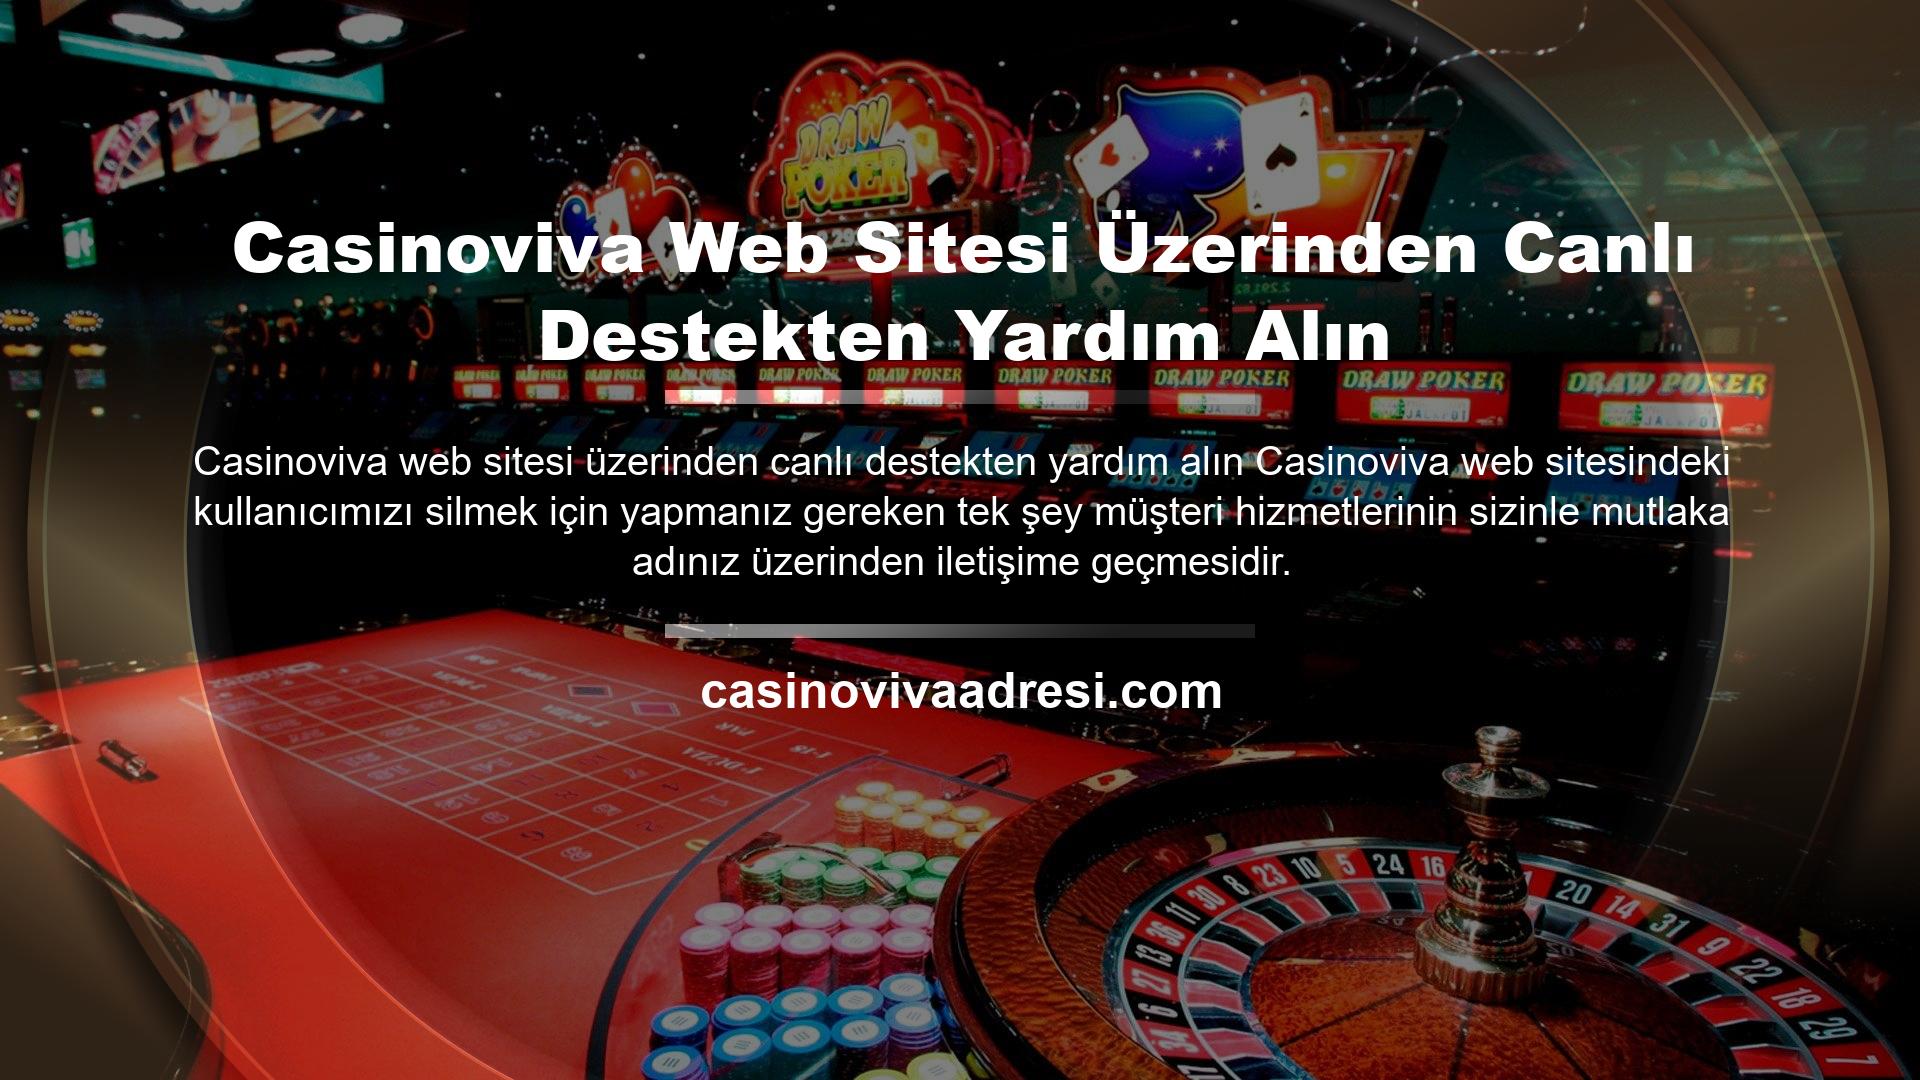 Casinoviva müşteri hizmetleri ile iletişime geçmek için Casinoviva web sitesini ziyaret edebilir ve web sitesi sayfasının sol üst kısmında bulunan canlı destek düğmesine tıklayarak canlı destek ile iletişime geçme seçeneğine sahip olabilirsiniz